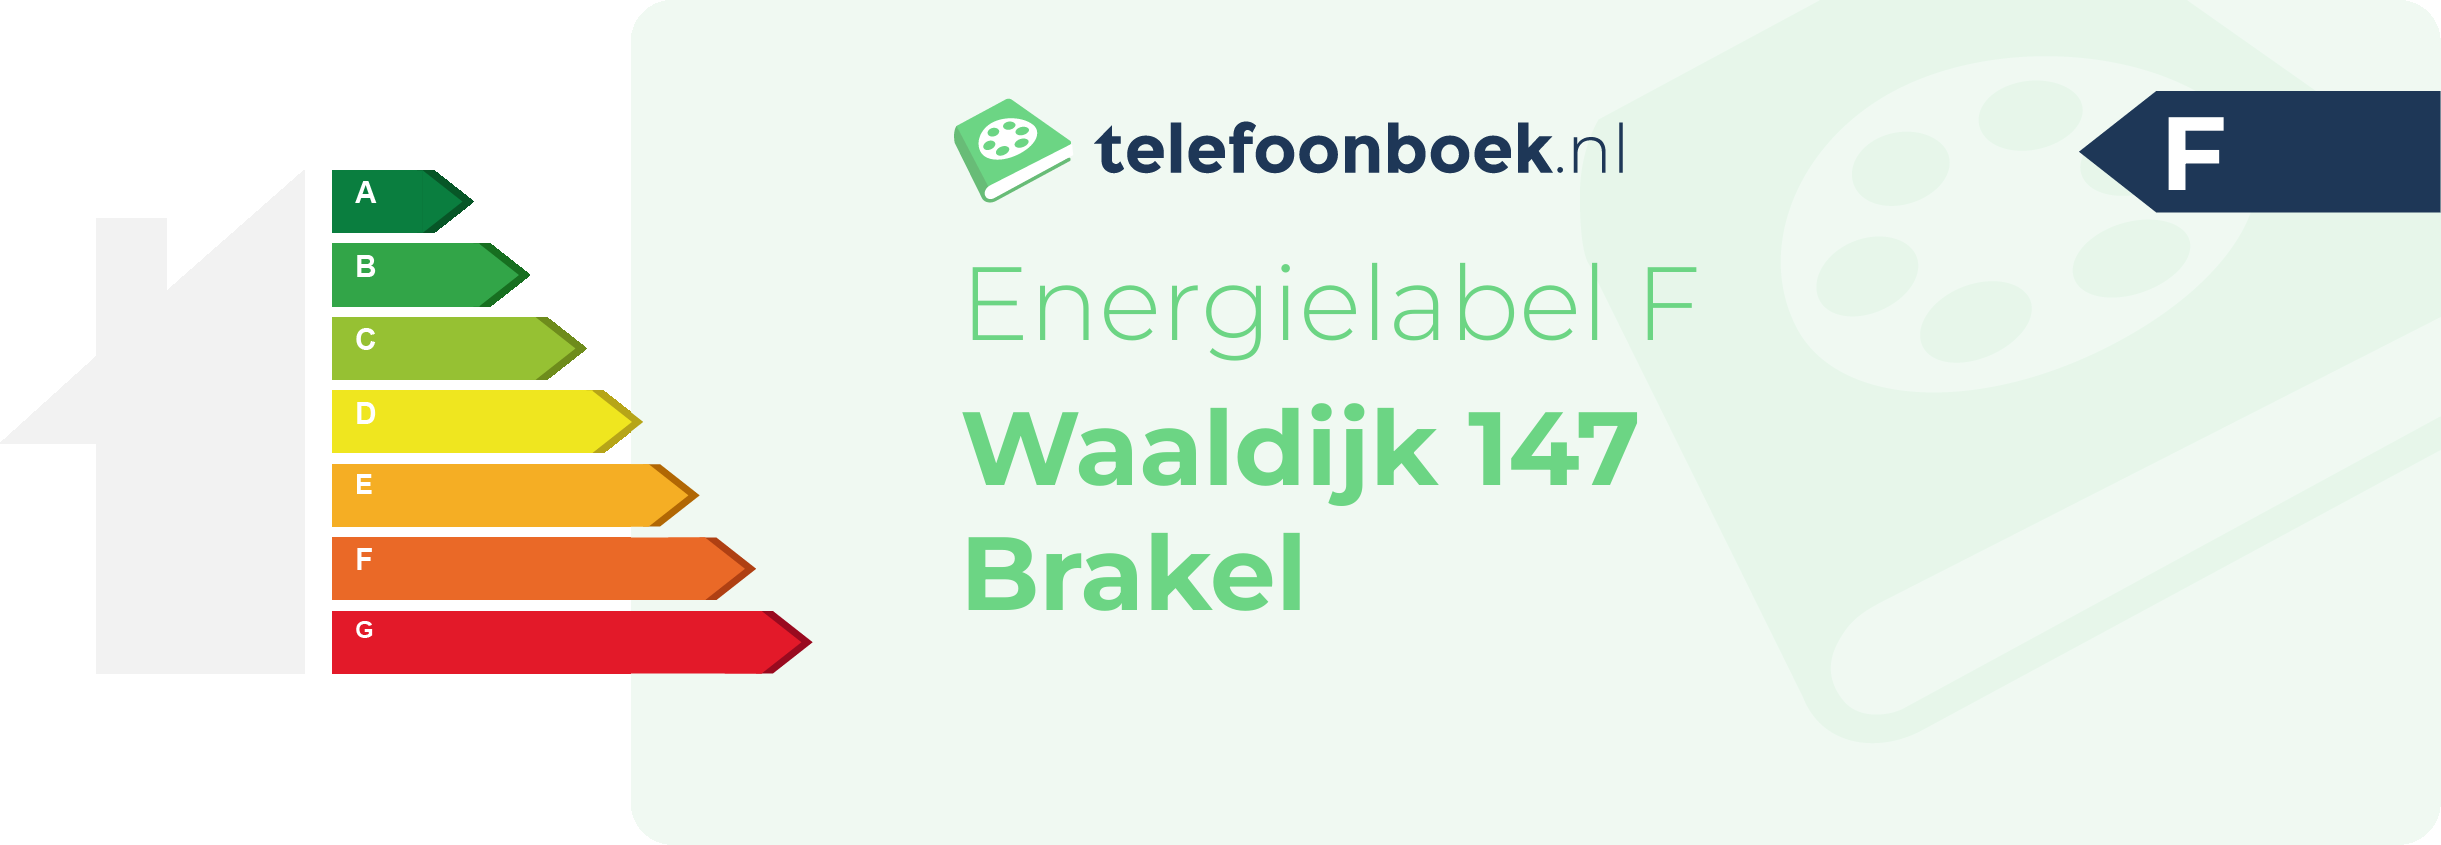 Energielabel Waaldijk 147 Brakel